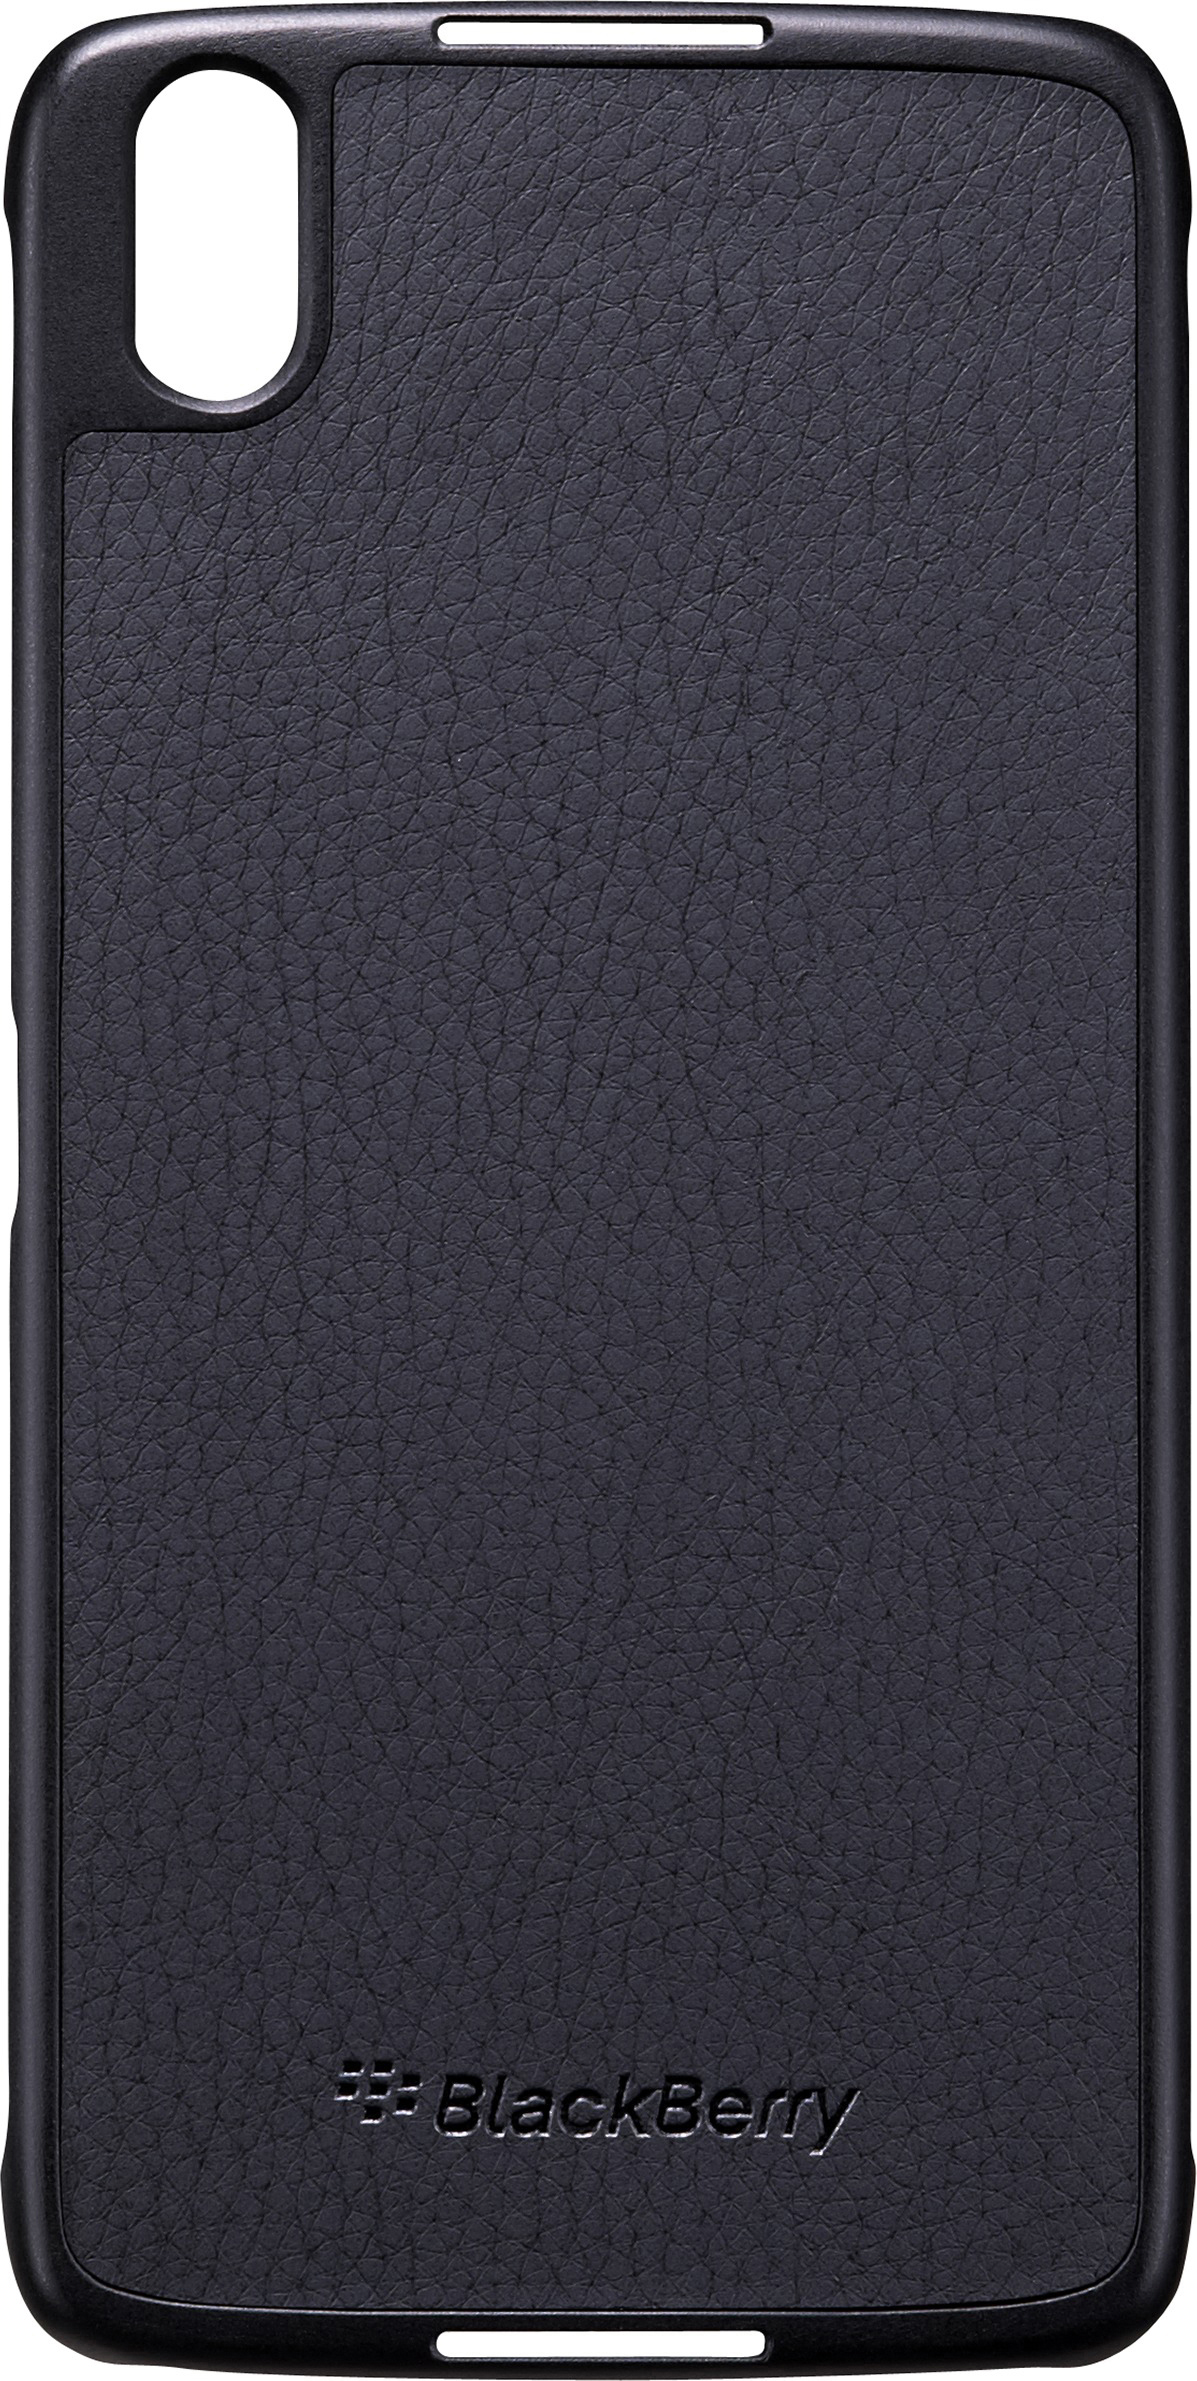 BLACKBERRY Hard Blackberry, DTEK Shell, Schwarz Backcover, 50